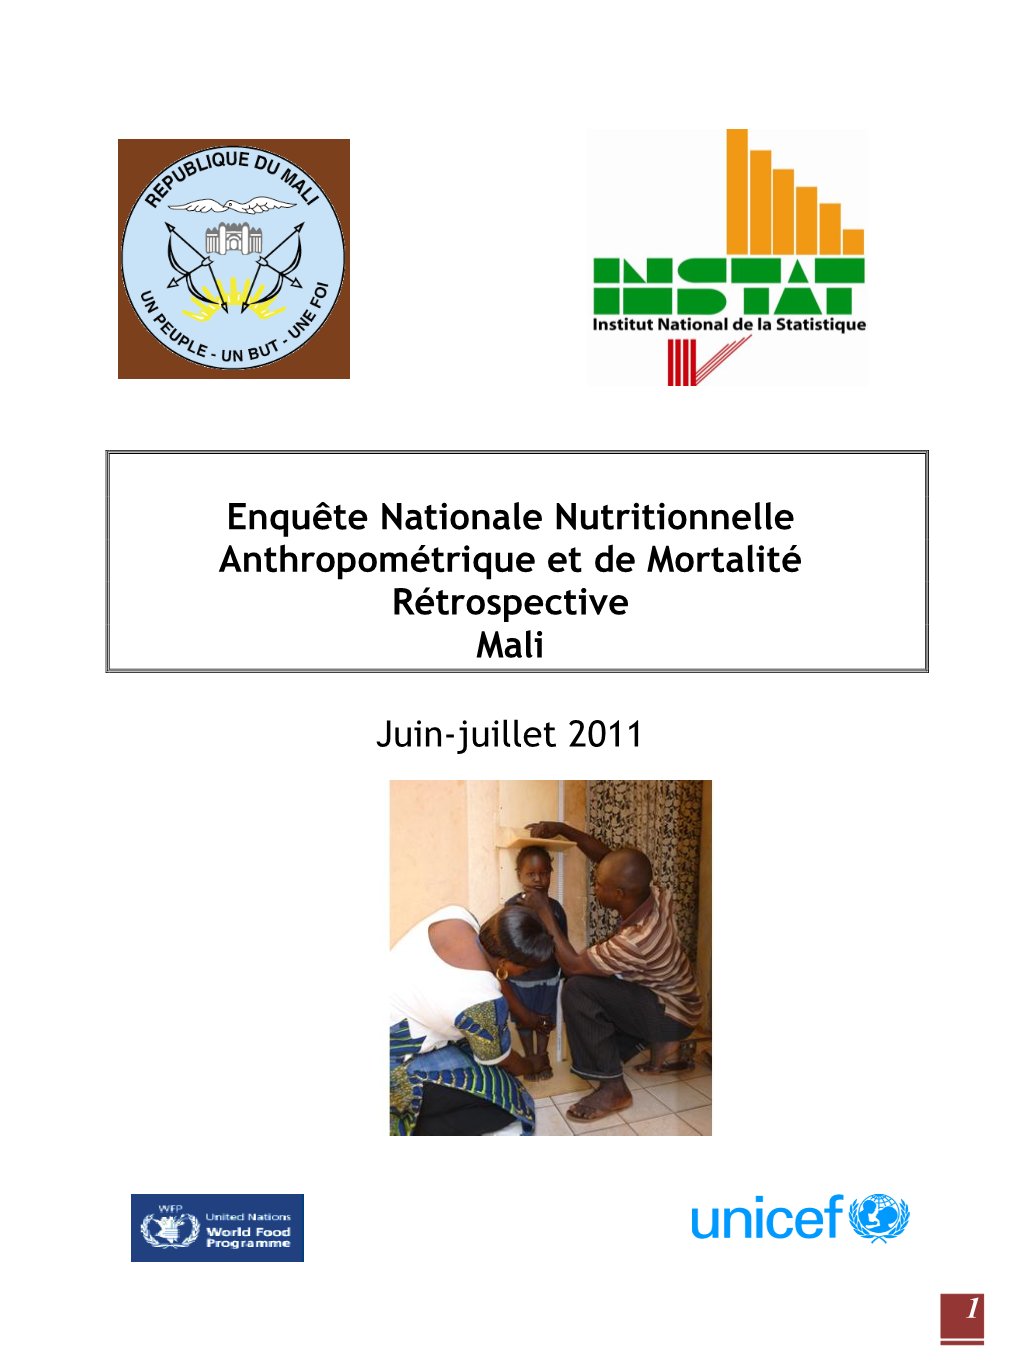 Enquête Nationale Nutritionnelle Anthropométrique Et De Mortalité Rétrospective Mali Juin-Juillet 2011